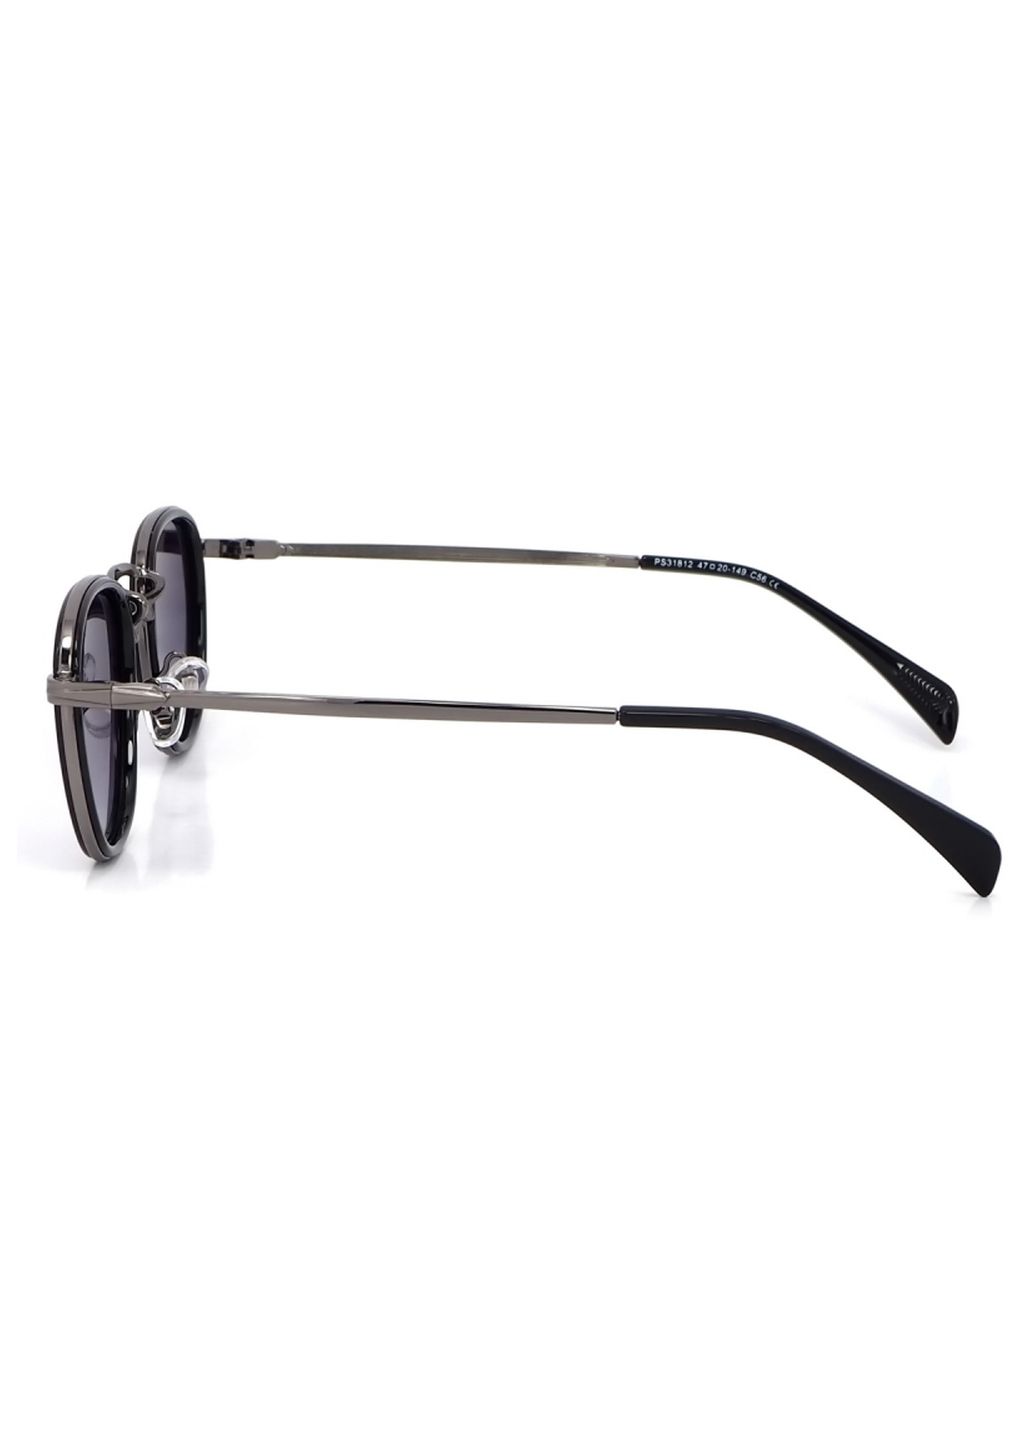 Купить Женские солнцезащитные очки Merlini с поляризацией S31812P 117025 - Черный в интернет-магазине